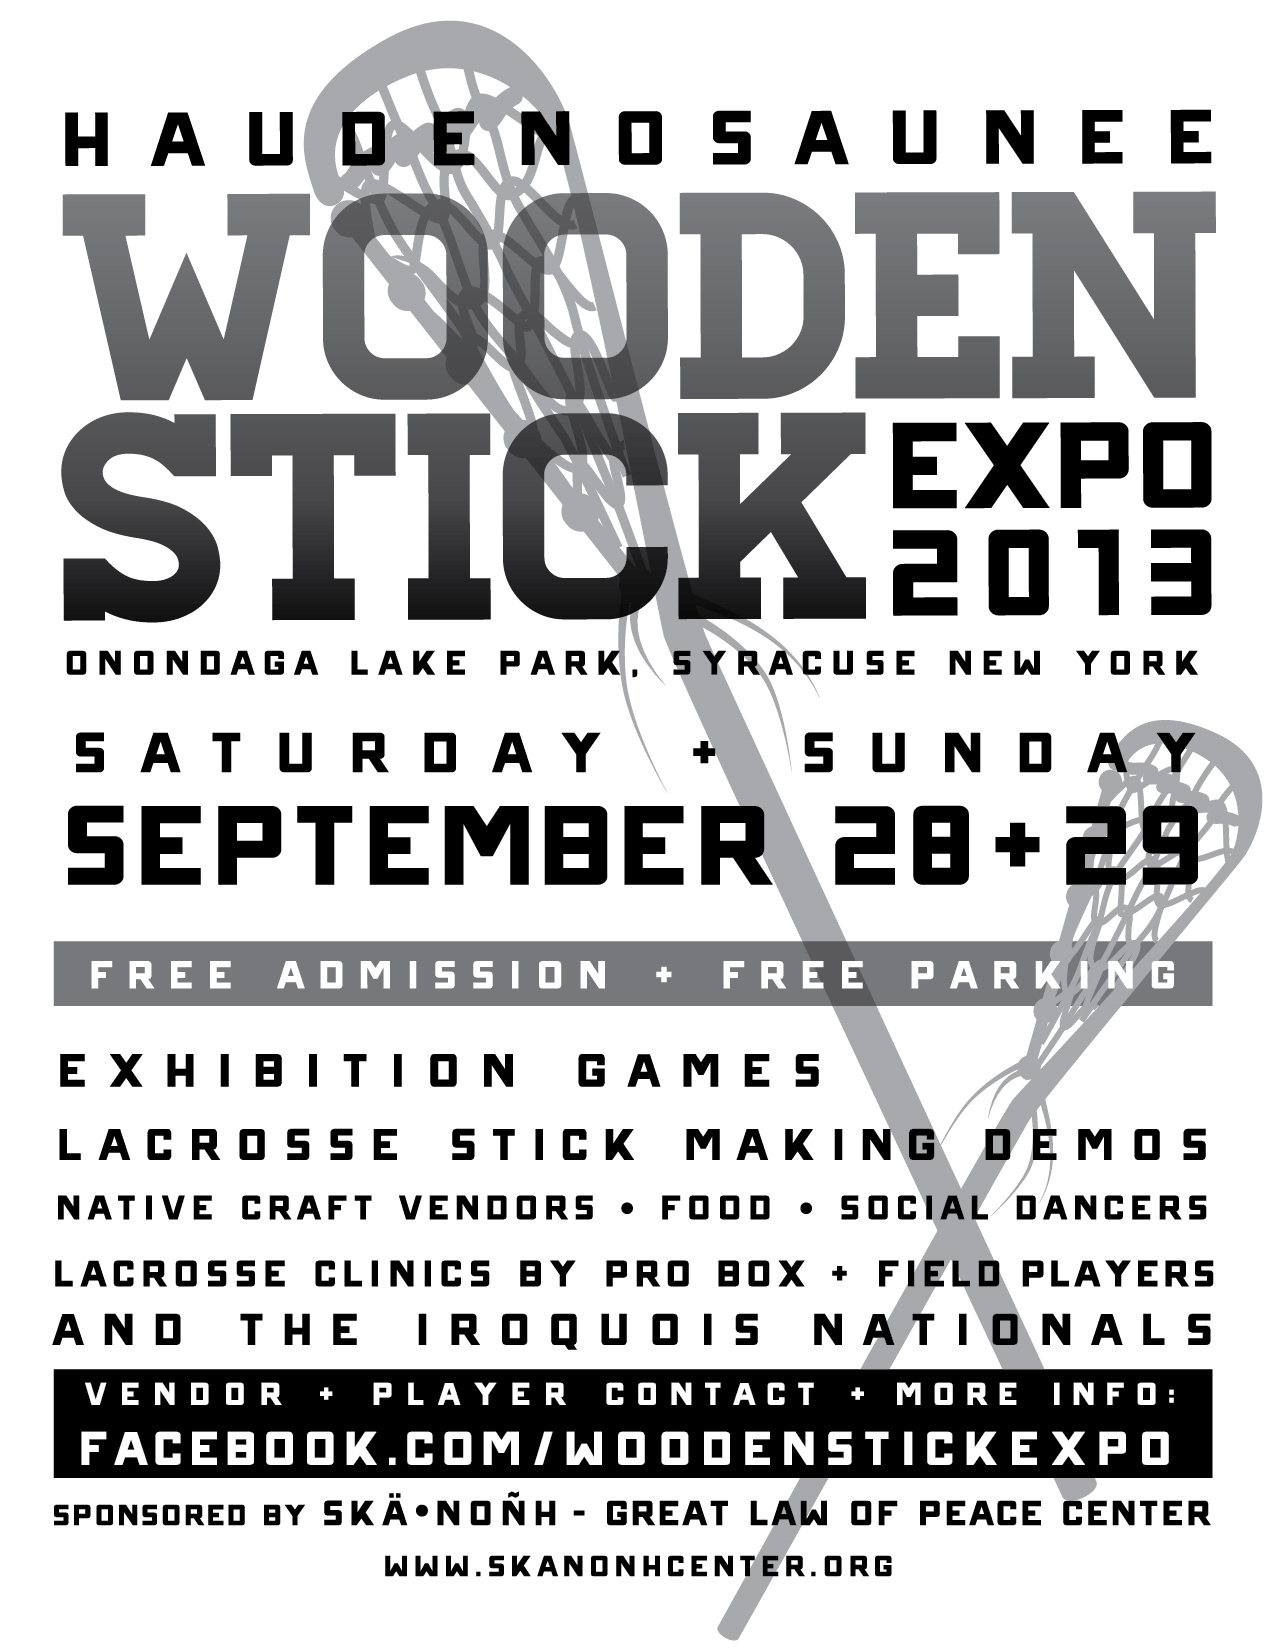 Haudenosaunee Wooden Stick Expo